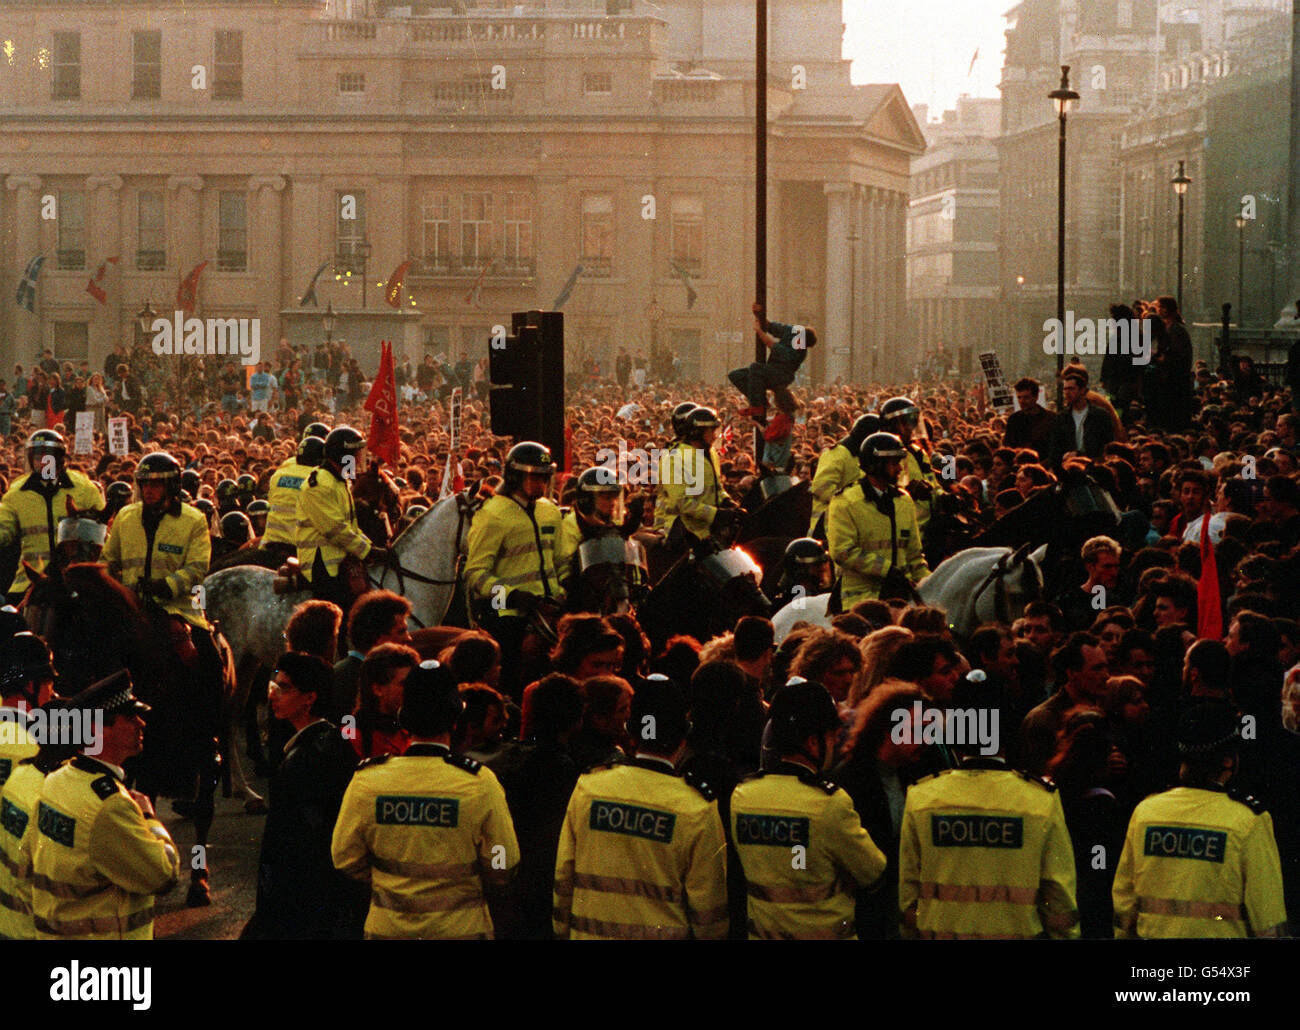 Berittene Polizisten und Polizisten zu Fuß versuchen, eine Menschenmenge zu kontrollieren, die sich auf dem Trafalgar Square in London versammelt, um gegen die von der konservativen Regierung erhobene Poll-Steuer zu protestieren. Der Protest entwickelte sich später zu einem Aufruhr im Londoner West End. Stockfoto